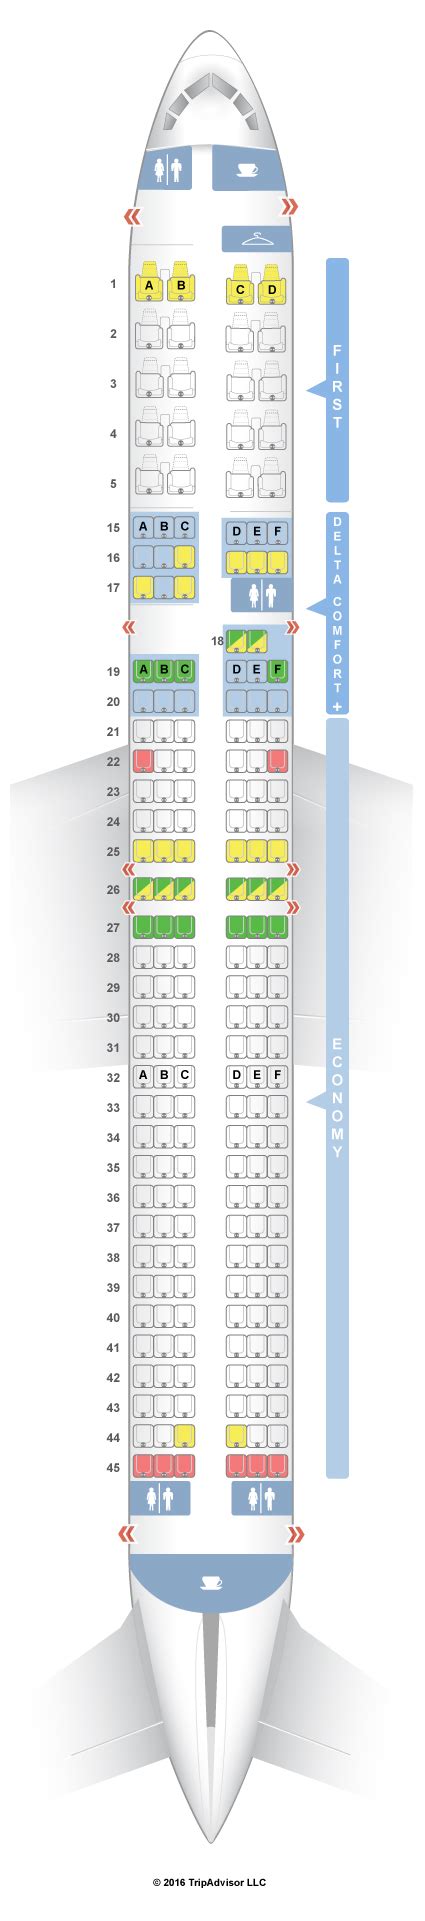 Seatguru Seat Map Delta Boeing D